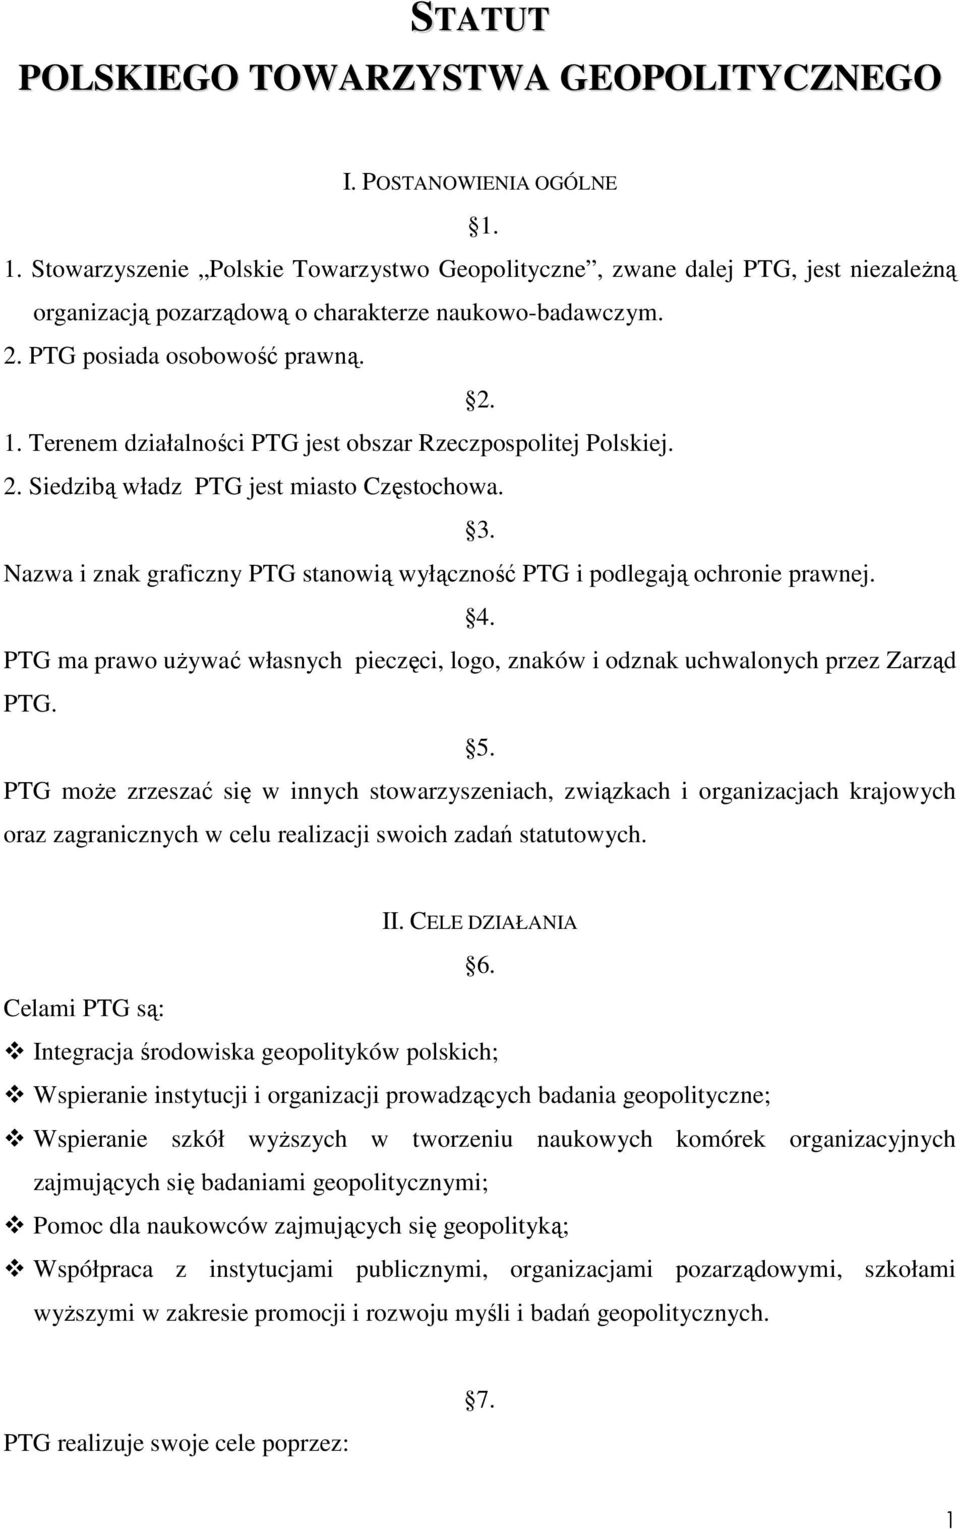 Terenem działalności PTG jest obszar Rzeczpospolitej Polskiej. 2. Siedzibą władz PTG jest miasto Częstochowa. 3. Nazwa i znak graficzny PTG stanowią wyłączność PTG i podlegają ochronie prawnej. 4.